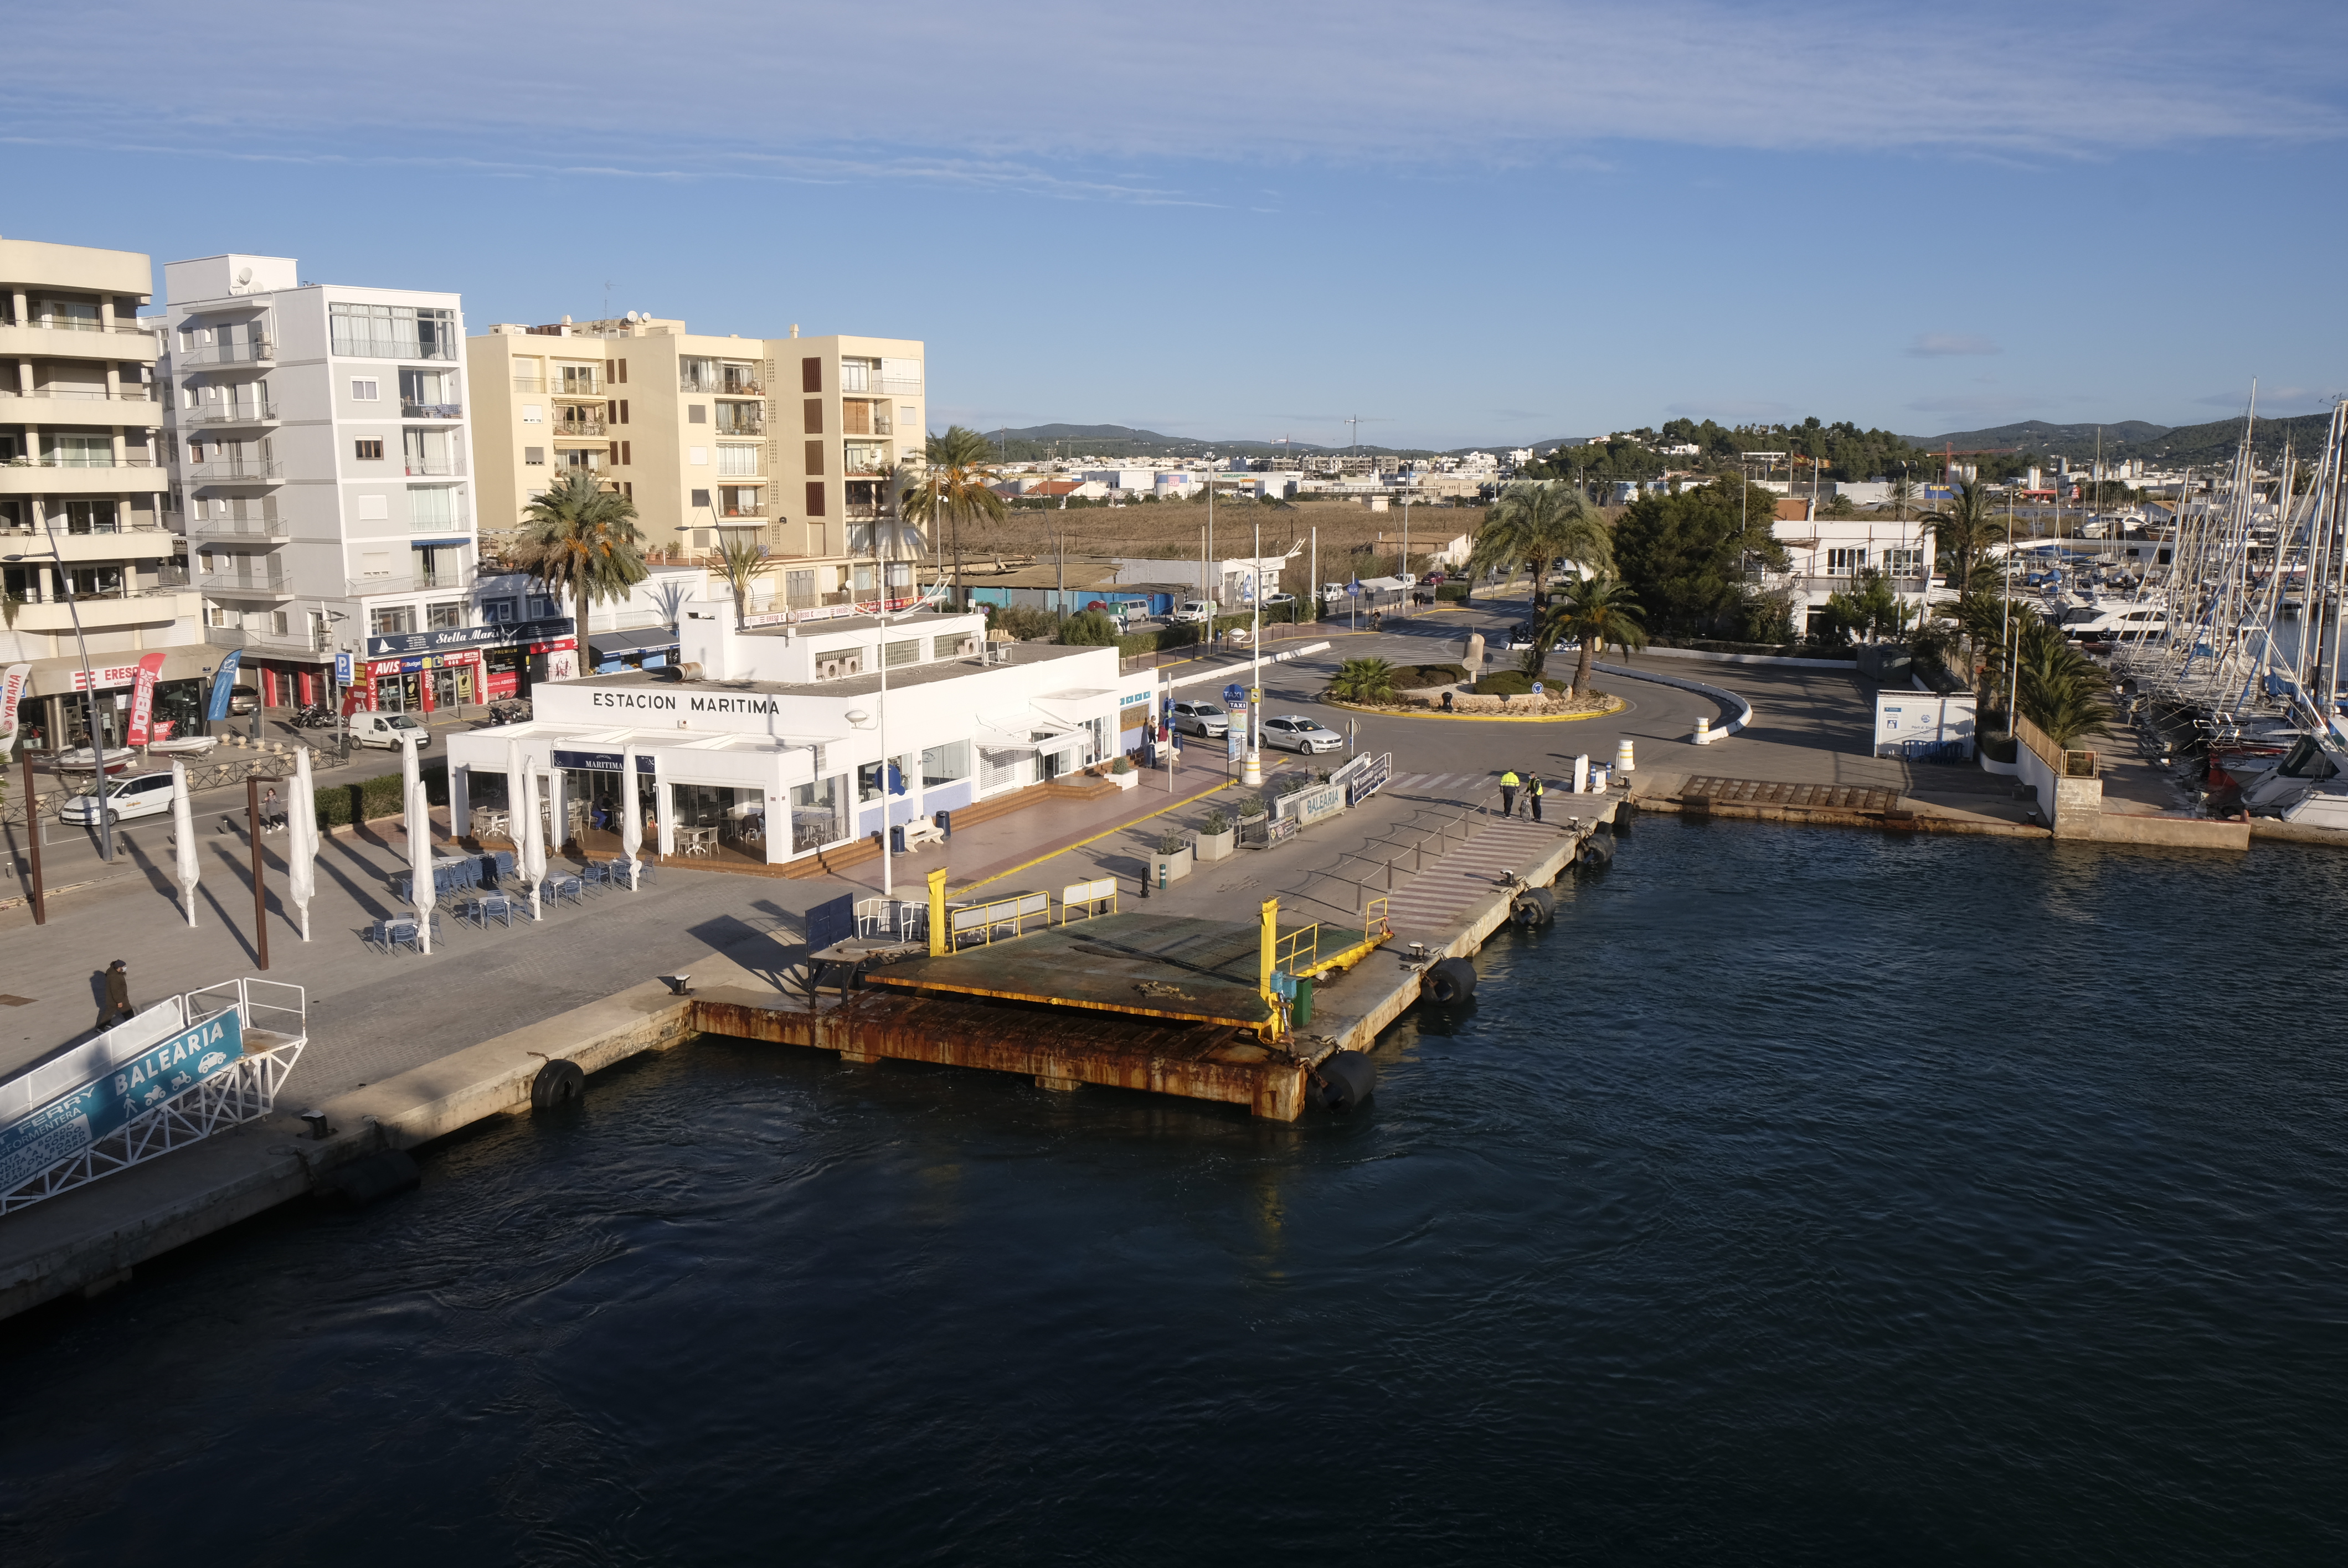 Als günstigste Lösung wurde das Angebot der Firma Calima la Savina S.L. für die Verwaltung der Cafeteria der Hafenstation von Formentera im Hafen von Eivissa ausgewählt